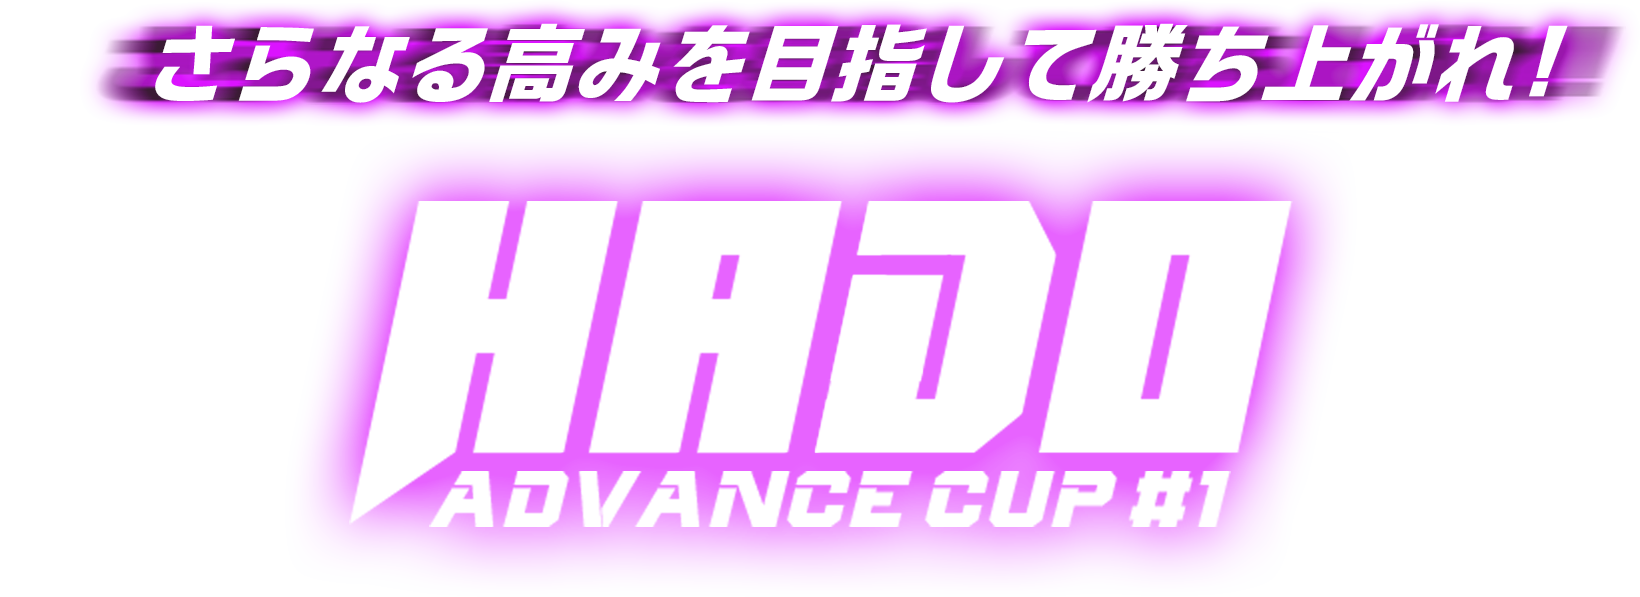 さらなる高みを目指して勝ち上がれ！ HADO ADVANCE CUP #1